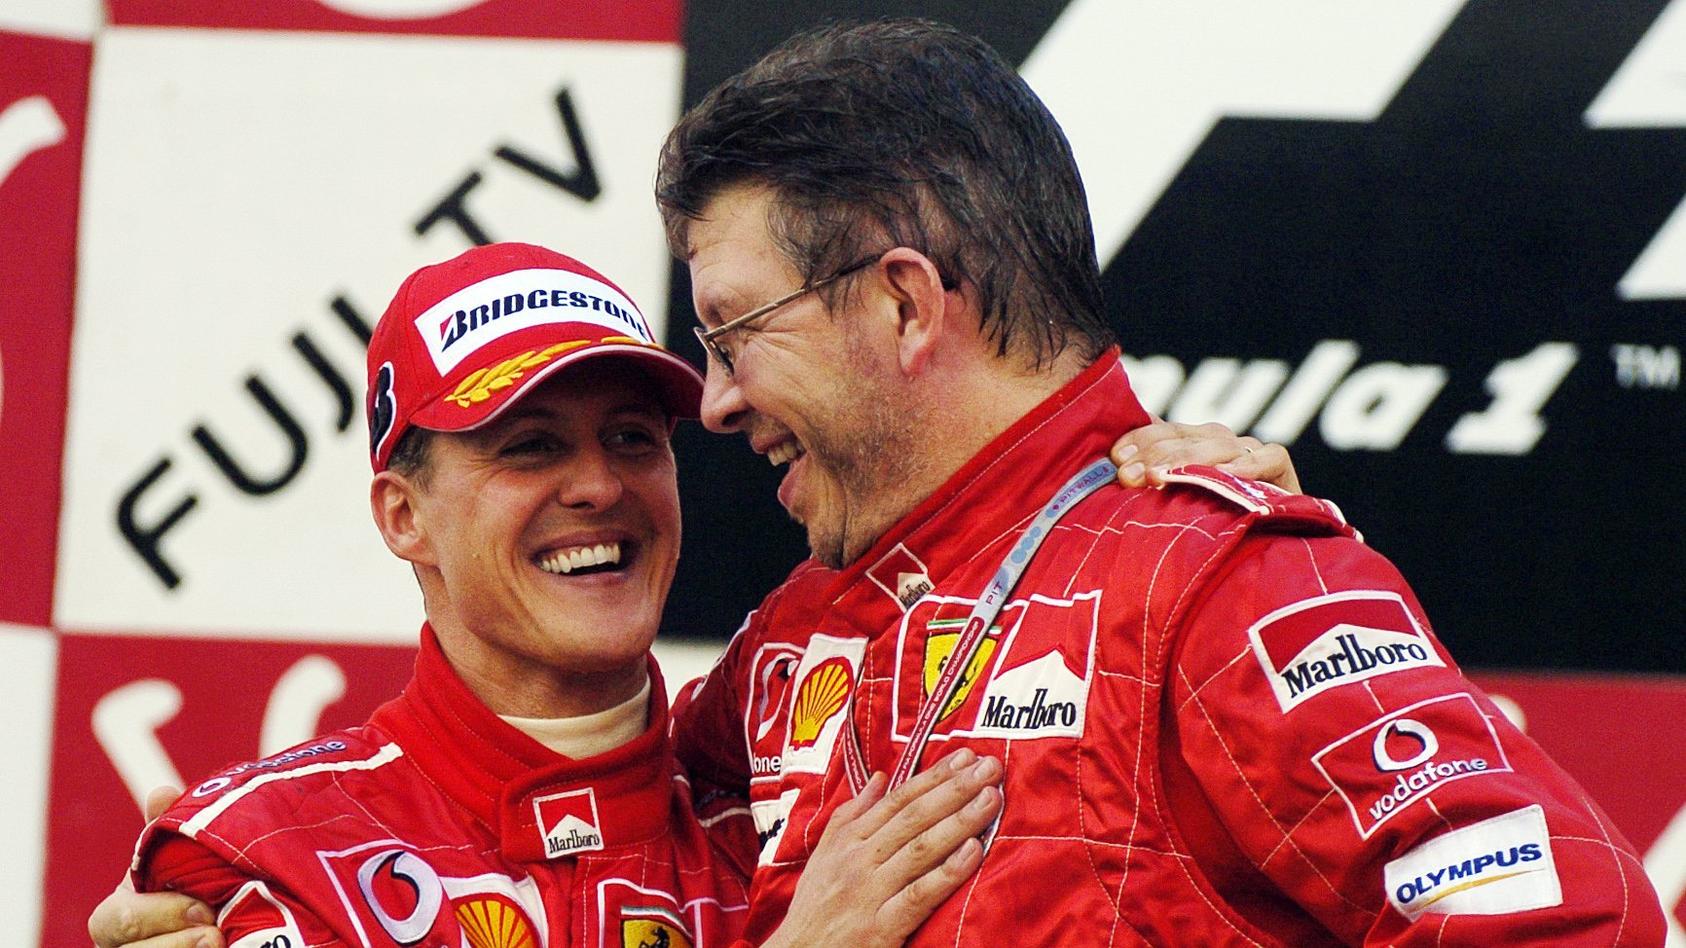 ARCHIV - 09.10.2004, Japan, Suzuka: ARCHIV - Der deutsche Formel-1-Pilot Michael Schumacher (l) jubelt in Suzuka nach seinem Sieg beim Großen Preis von Japan mit Ferrari-Technikchef Ross Brawn (Archivfoto vom 10.10.2004). Foto Oliver Multhaup dpa  ++